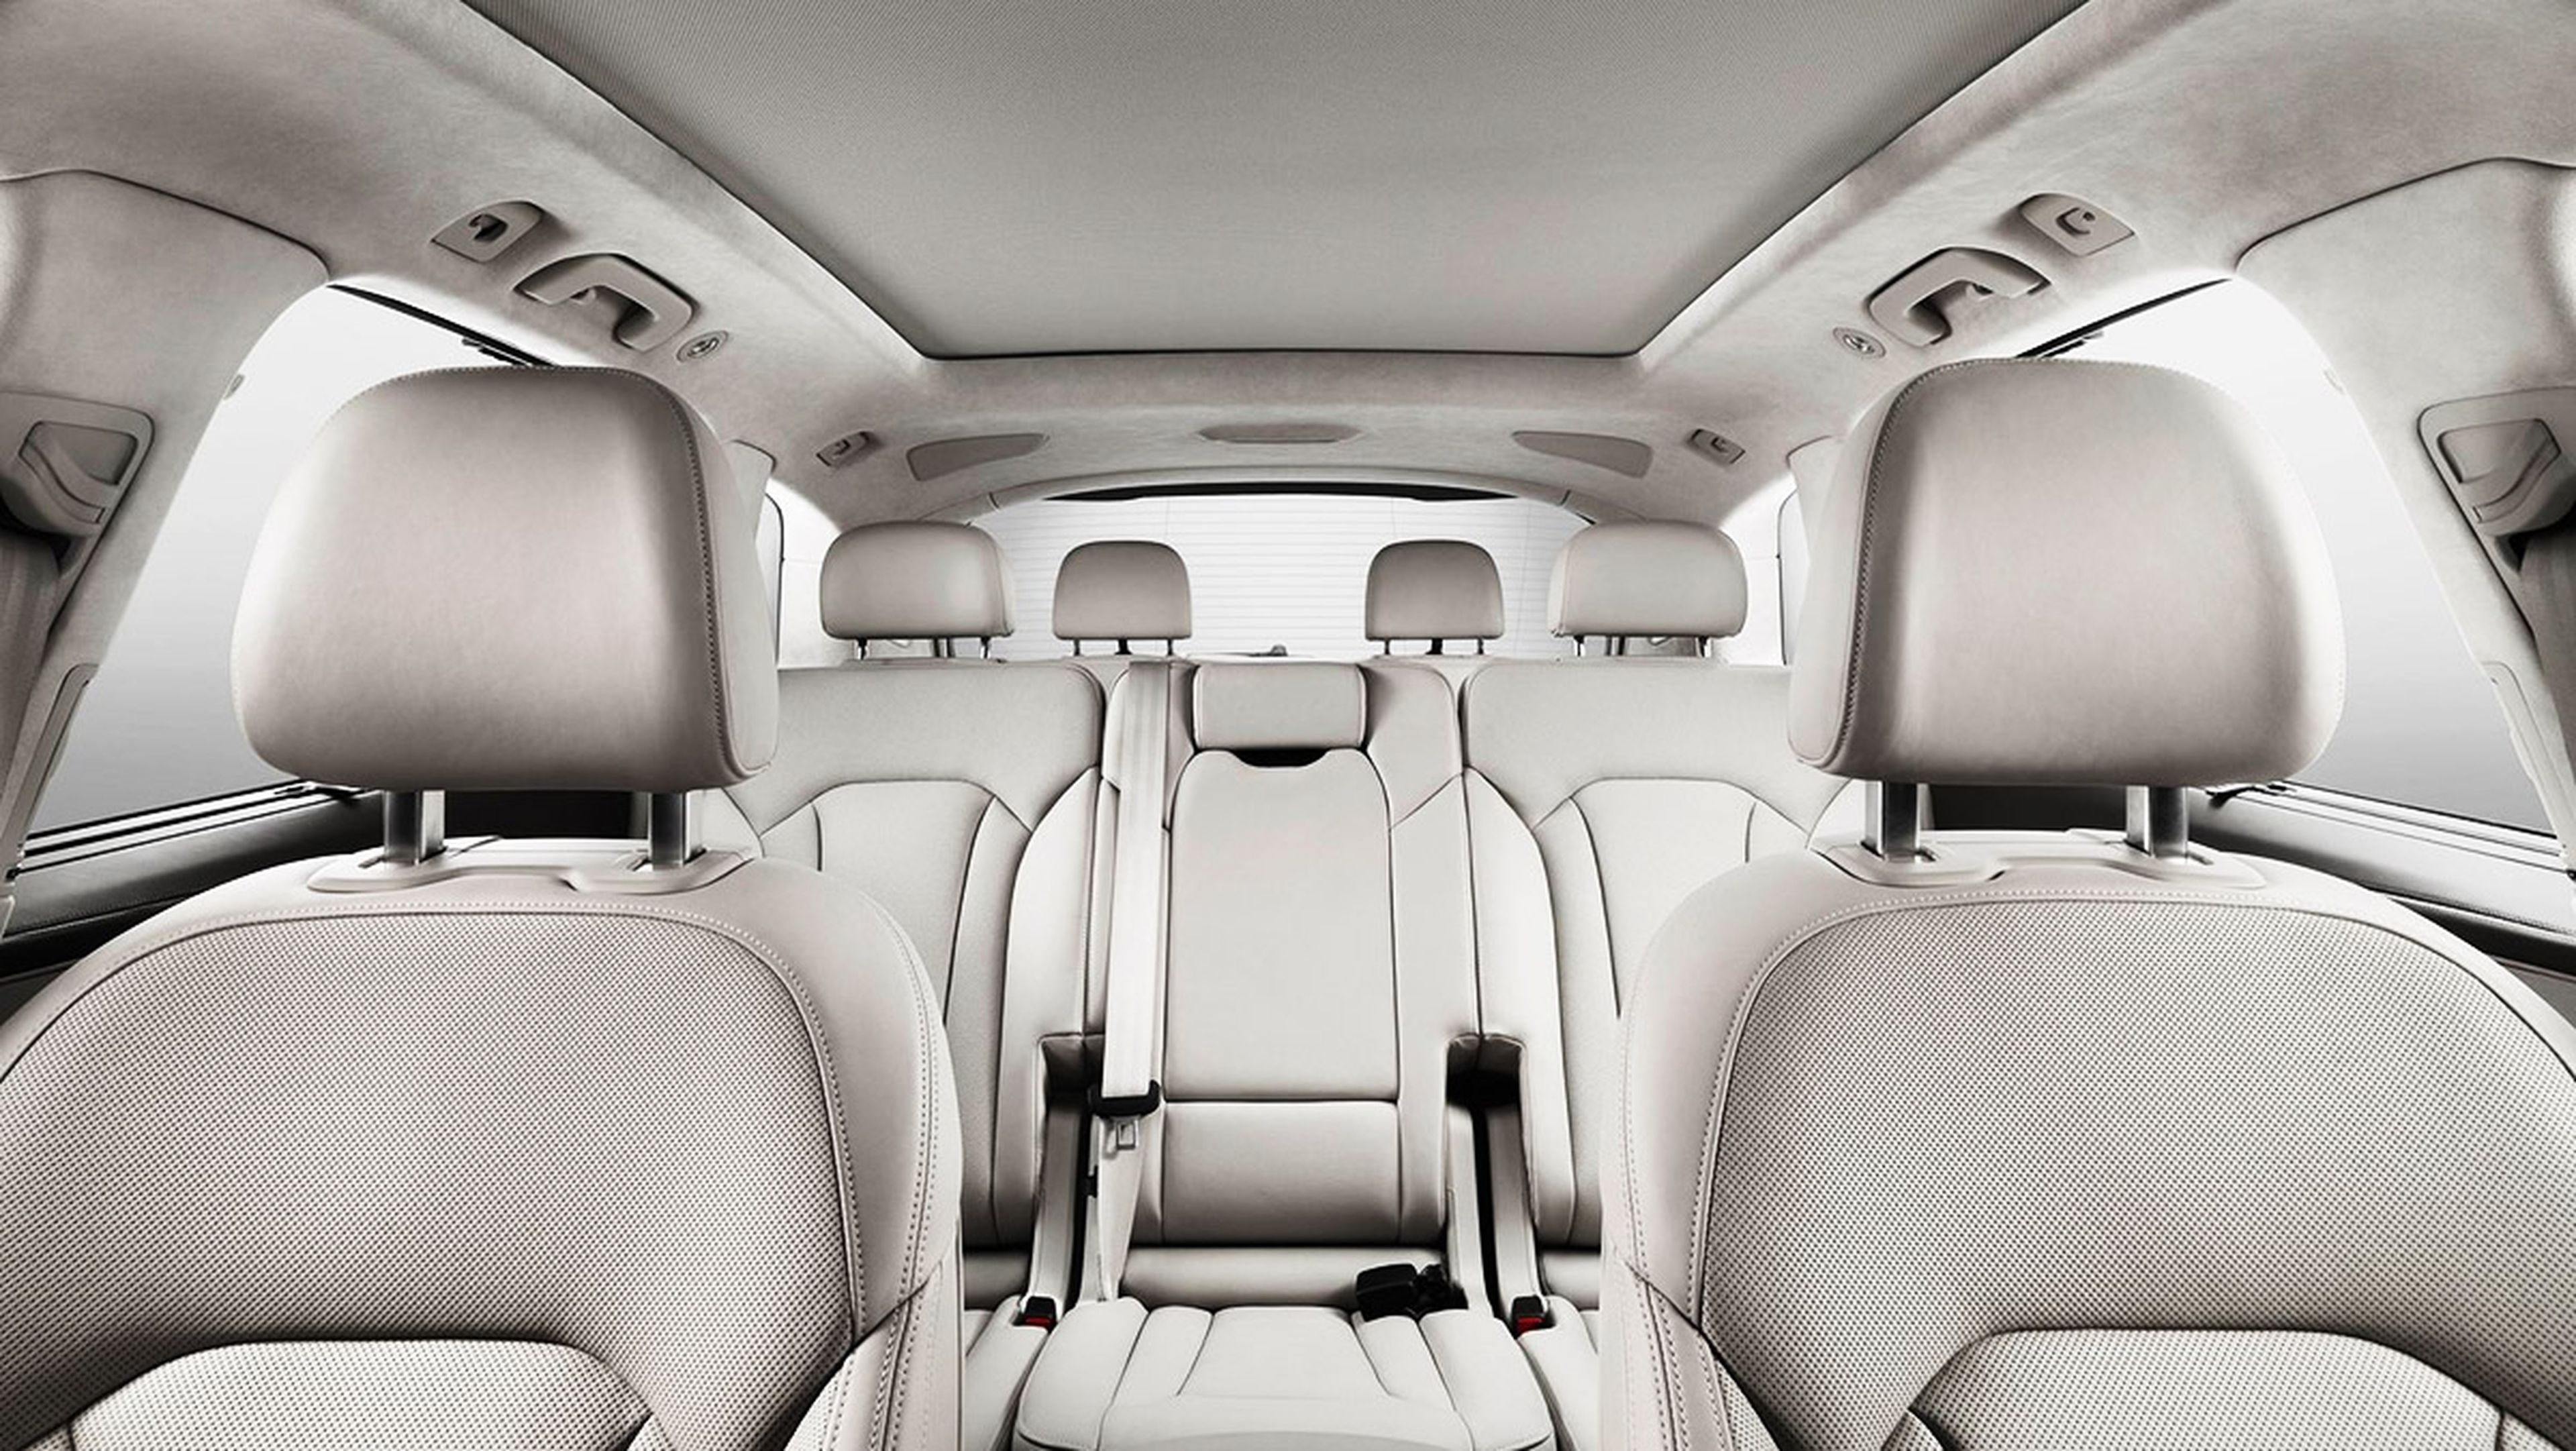 Creamos el SUV perfecto - Diseño interior: Audi Q7